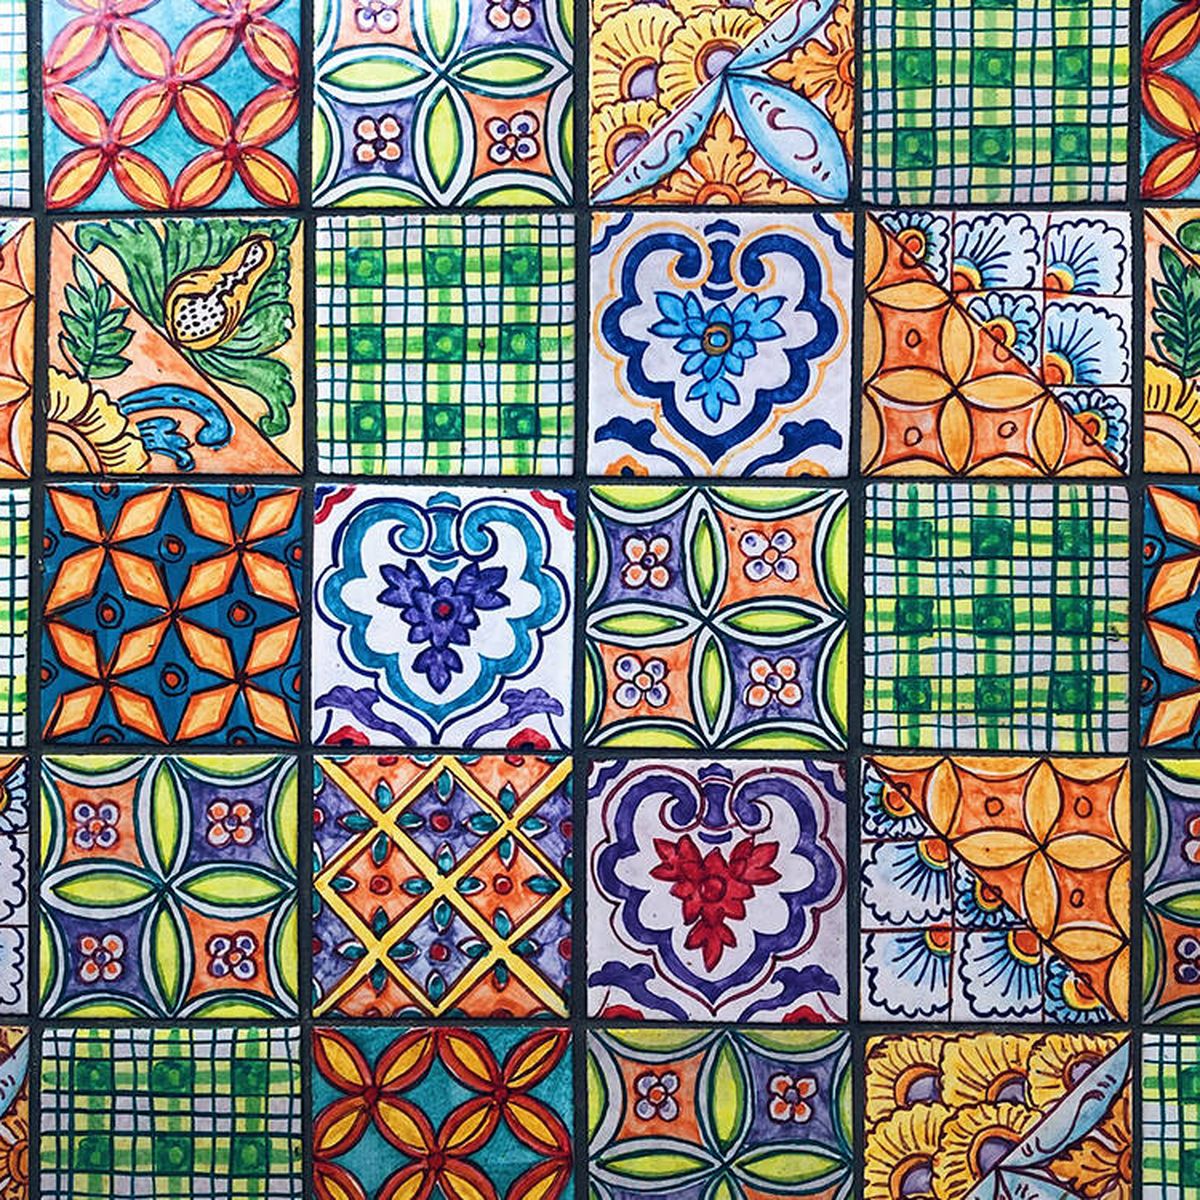 árabe alumno Fácil de comprender El azulejo vuelve para quedarse y decorar con gusto suelos, paredes y  muebles